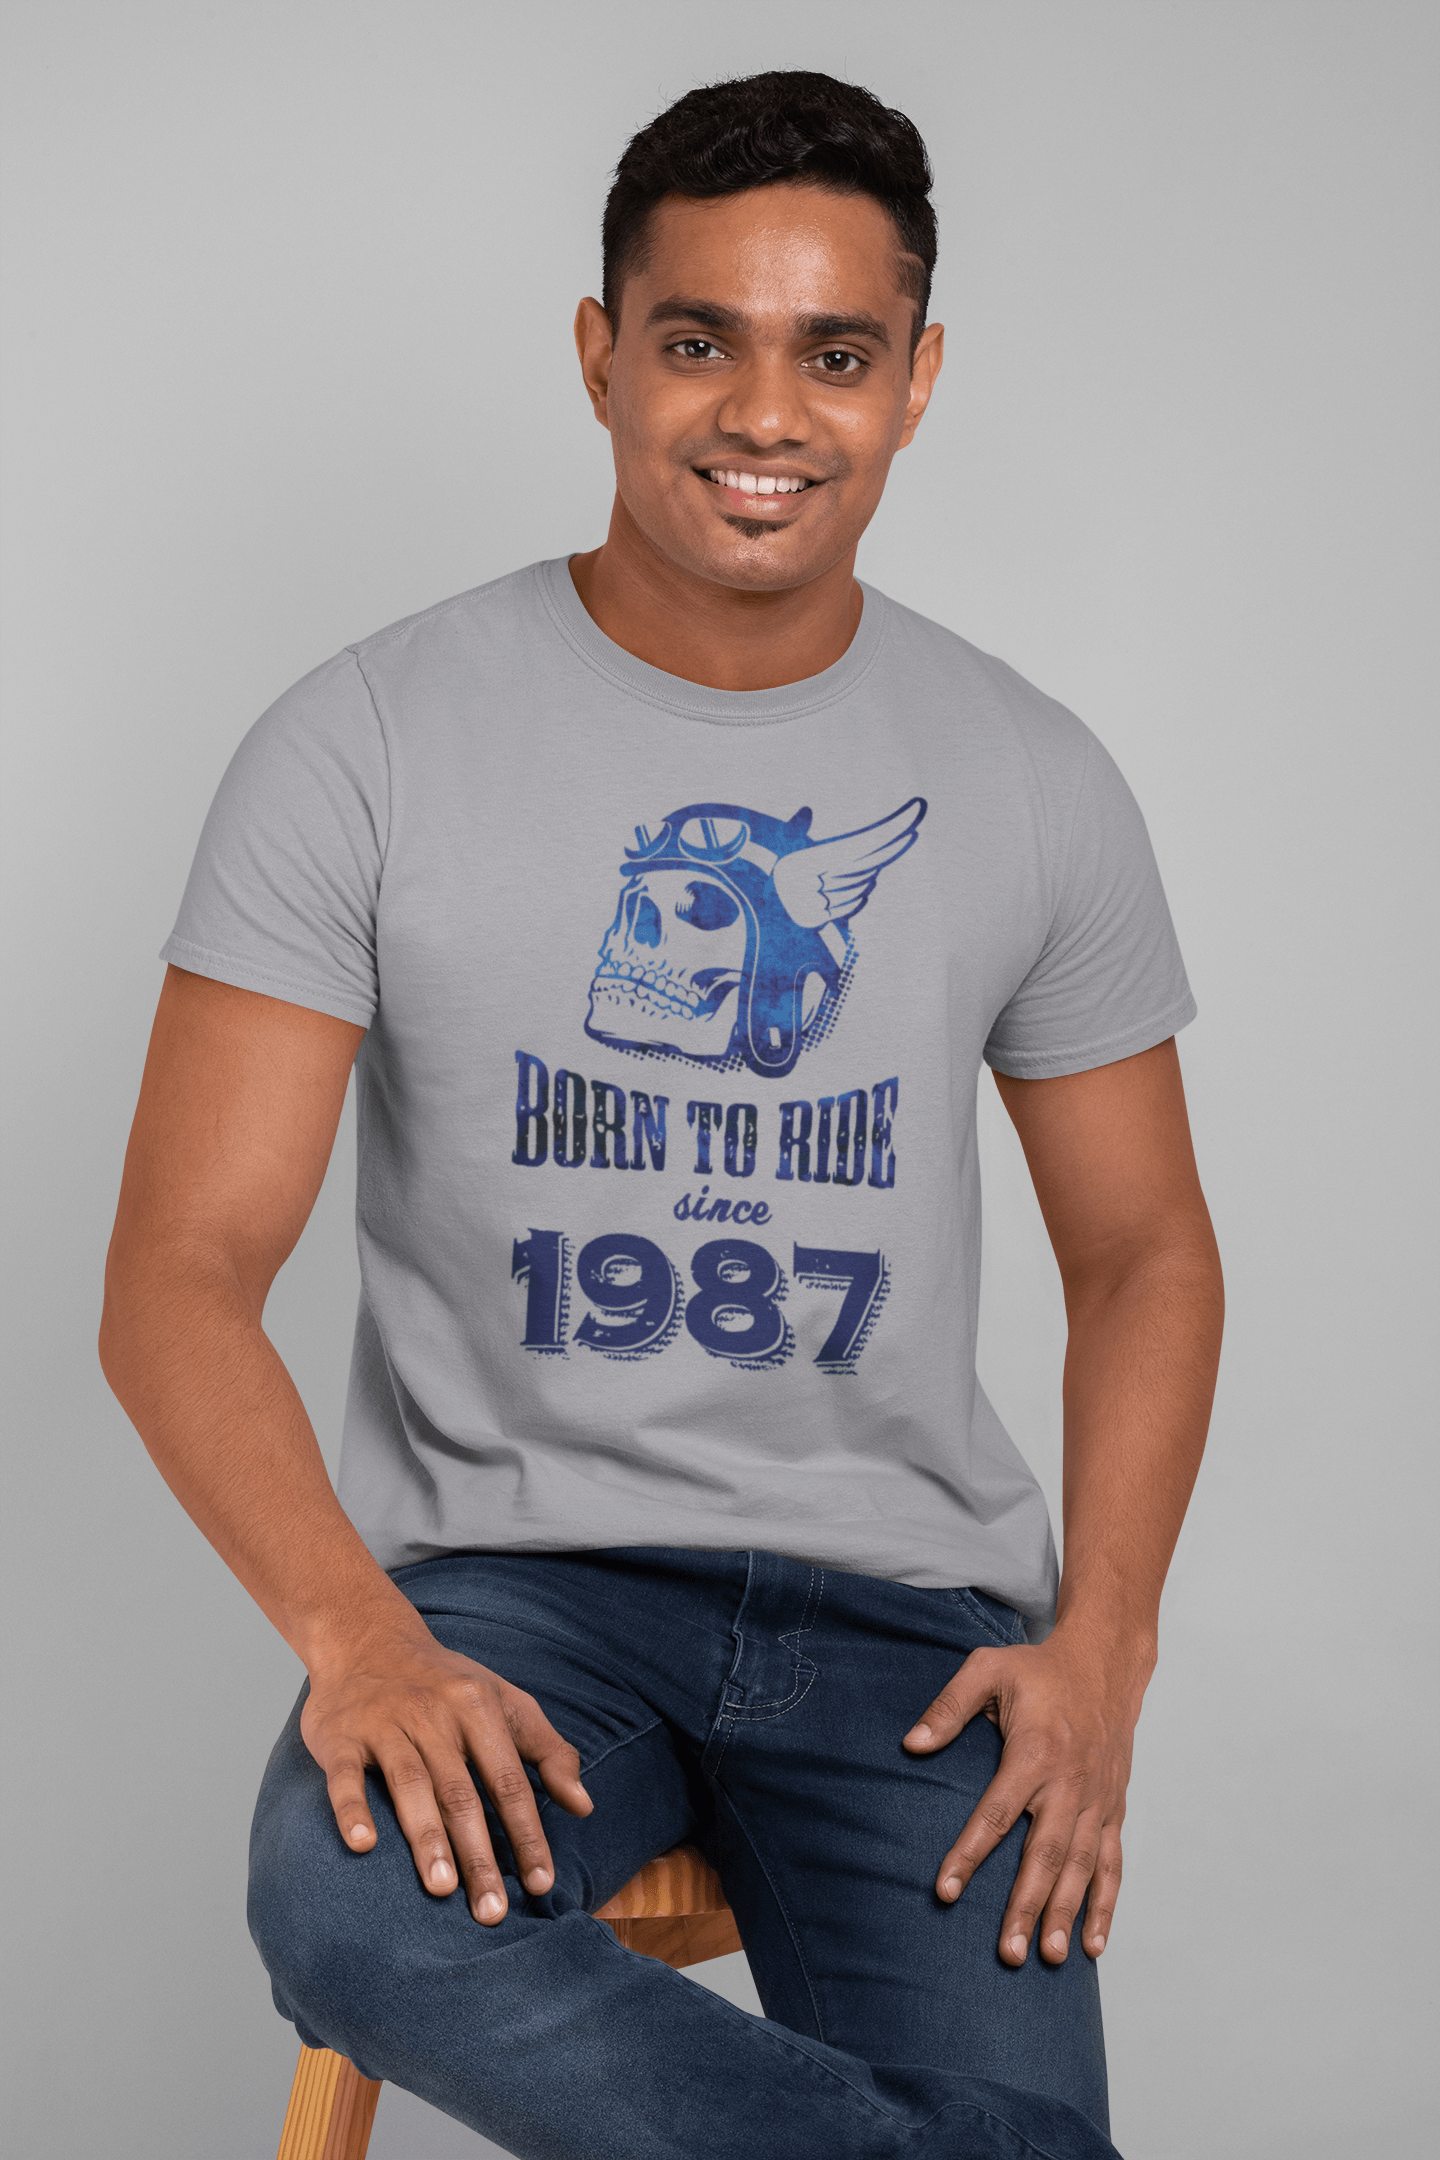 1987, Born to Ride Since 1987 Herren T-Shirt Grau Geburtstagsgeschenk 00495